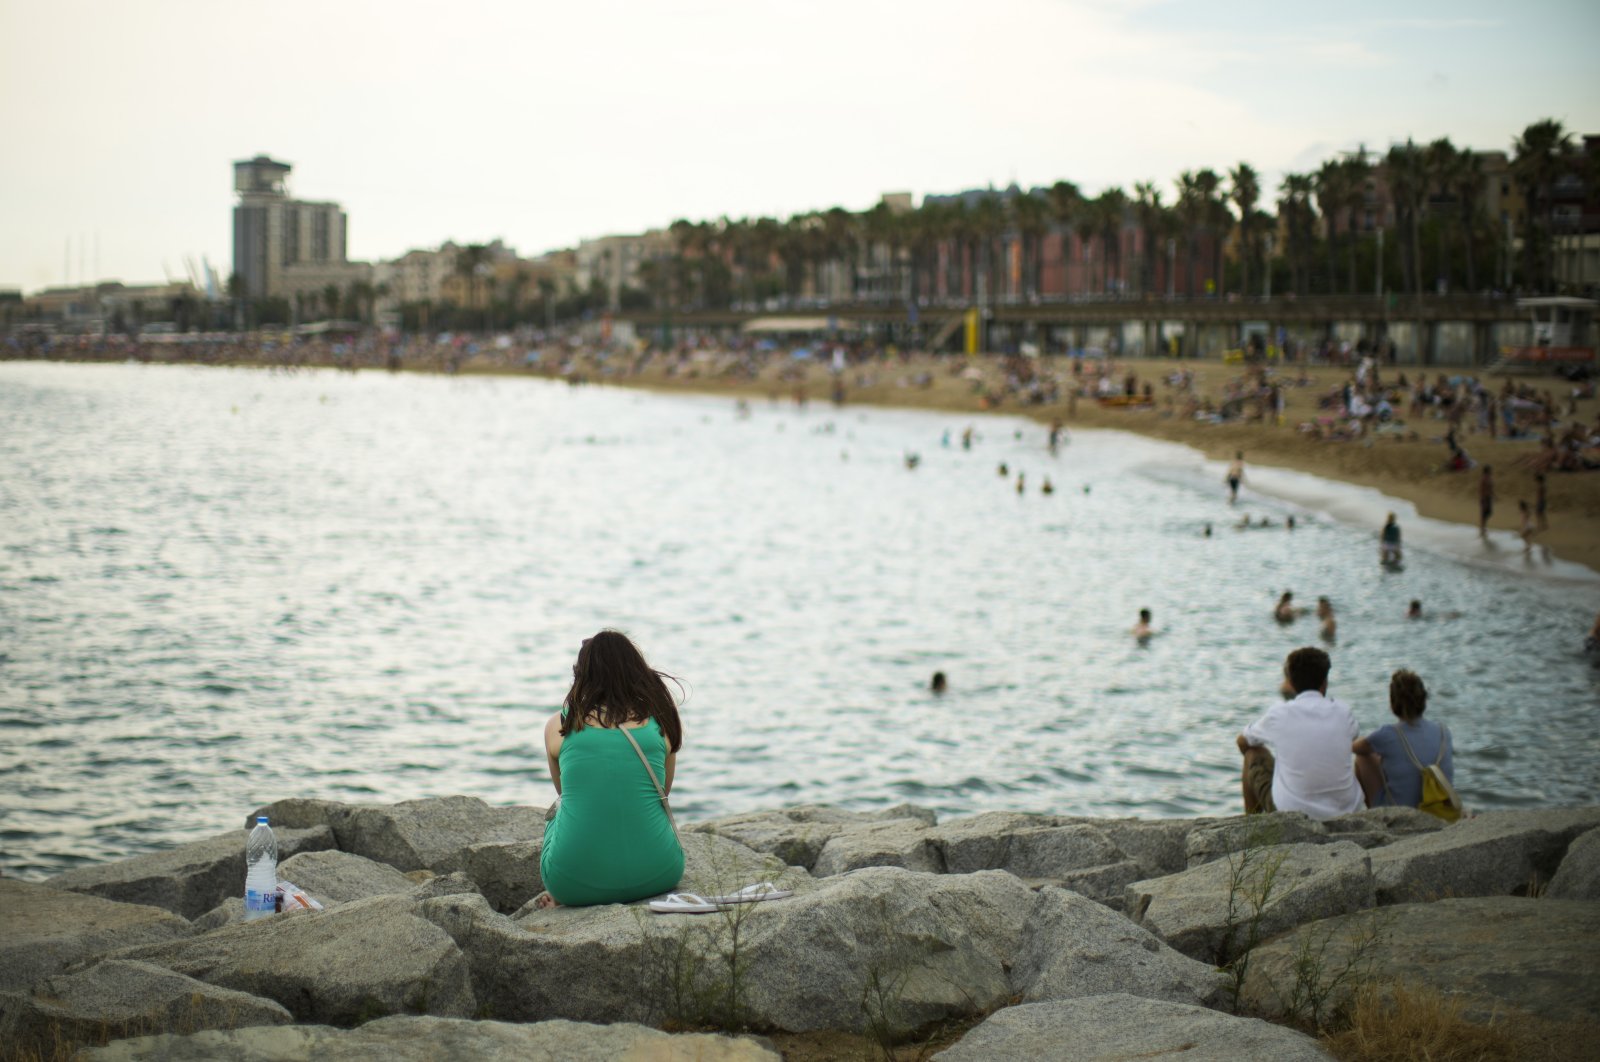 Tidak ada tubuh pantai yang sempurna: Spanyol menolak kecantikan ideal yang dihadapi wanita